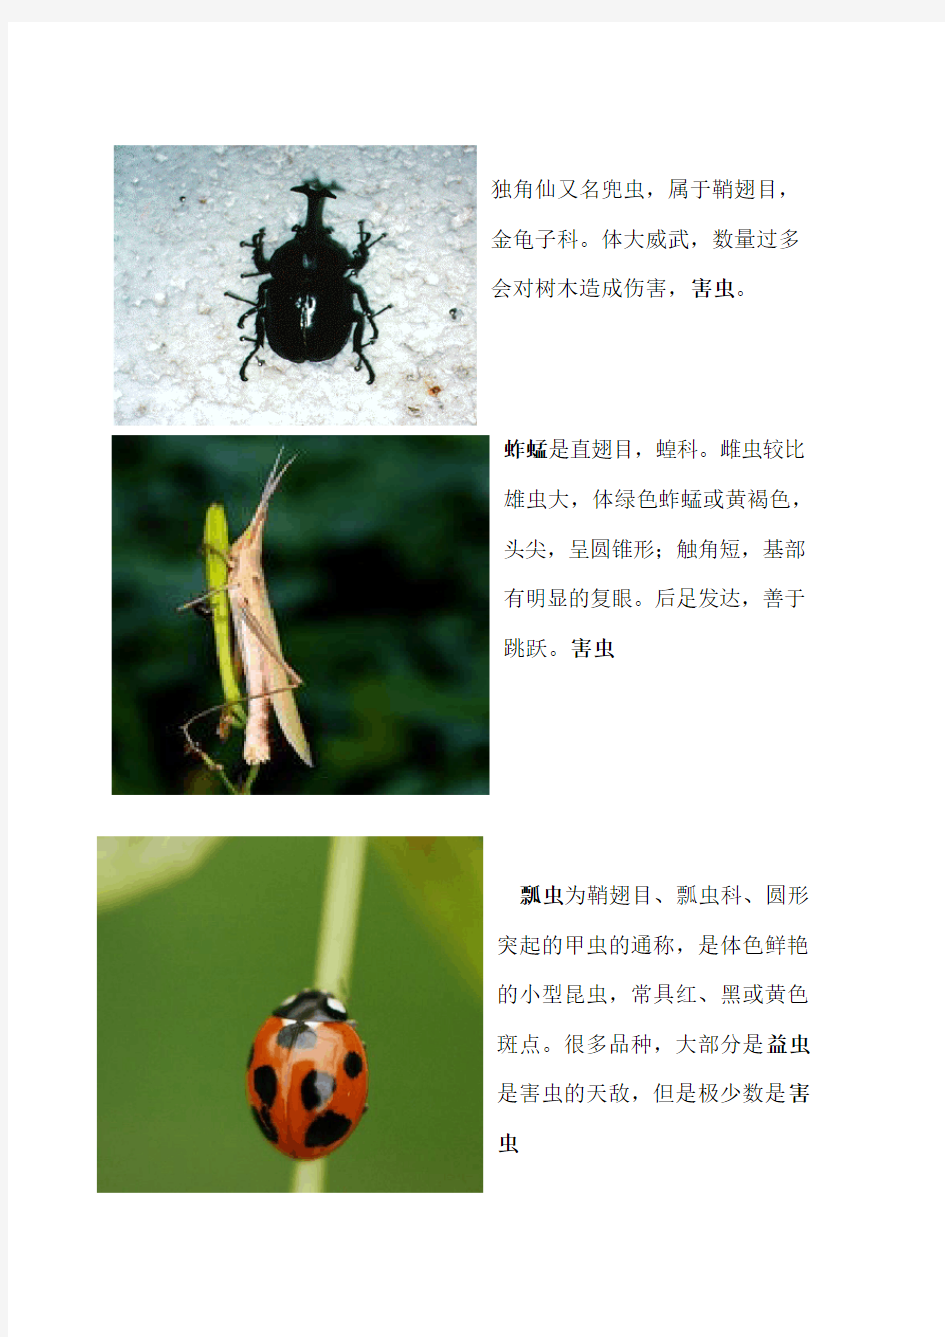 十种昆虫的图文介绍 打印